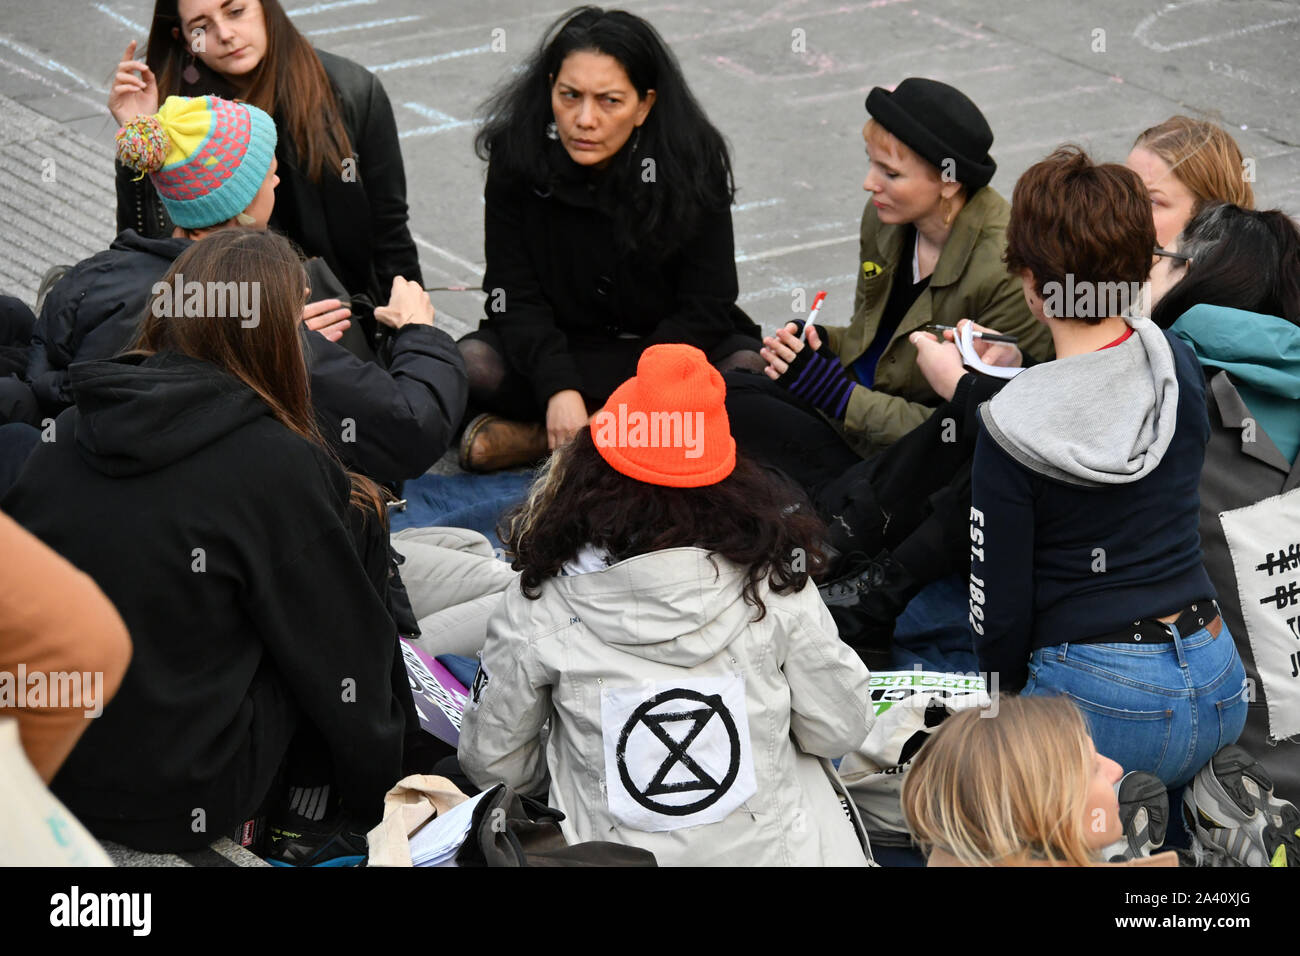 Londra, Regno Unito. 10 ottobre, 2019. Estinzione della ribellione manifestanti in Trafalgar Square, Londra London, Regno Unito - 10 ottobre 2019 Credit: Nils Jorgensen/Alamy Live News Foto Stock